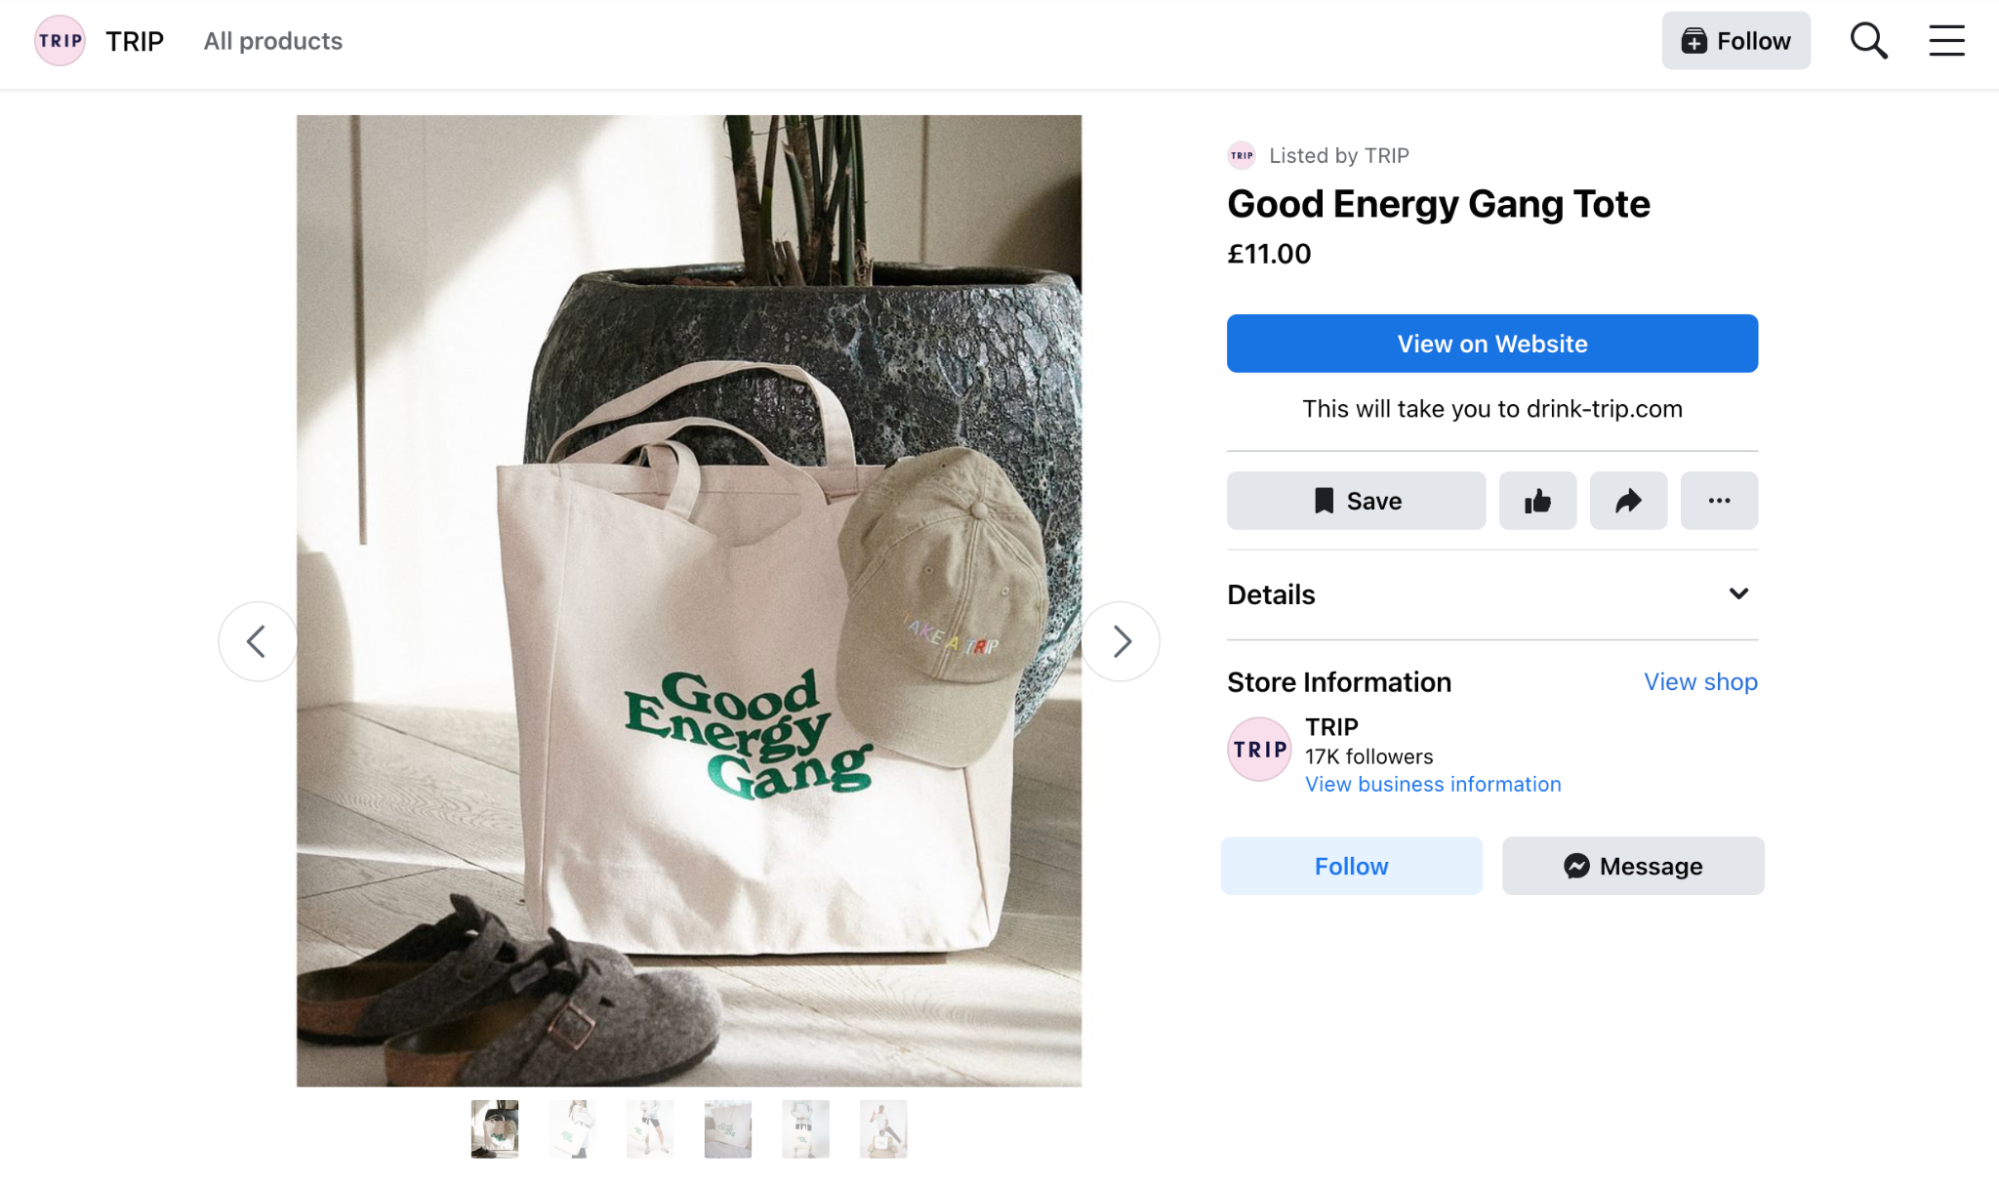 售价 11 英镑的奶油色手提袋的产品列表，上面印有绿色“Good energy gang”字样。